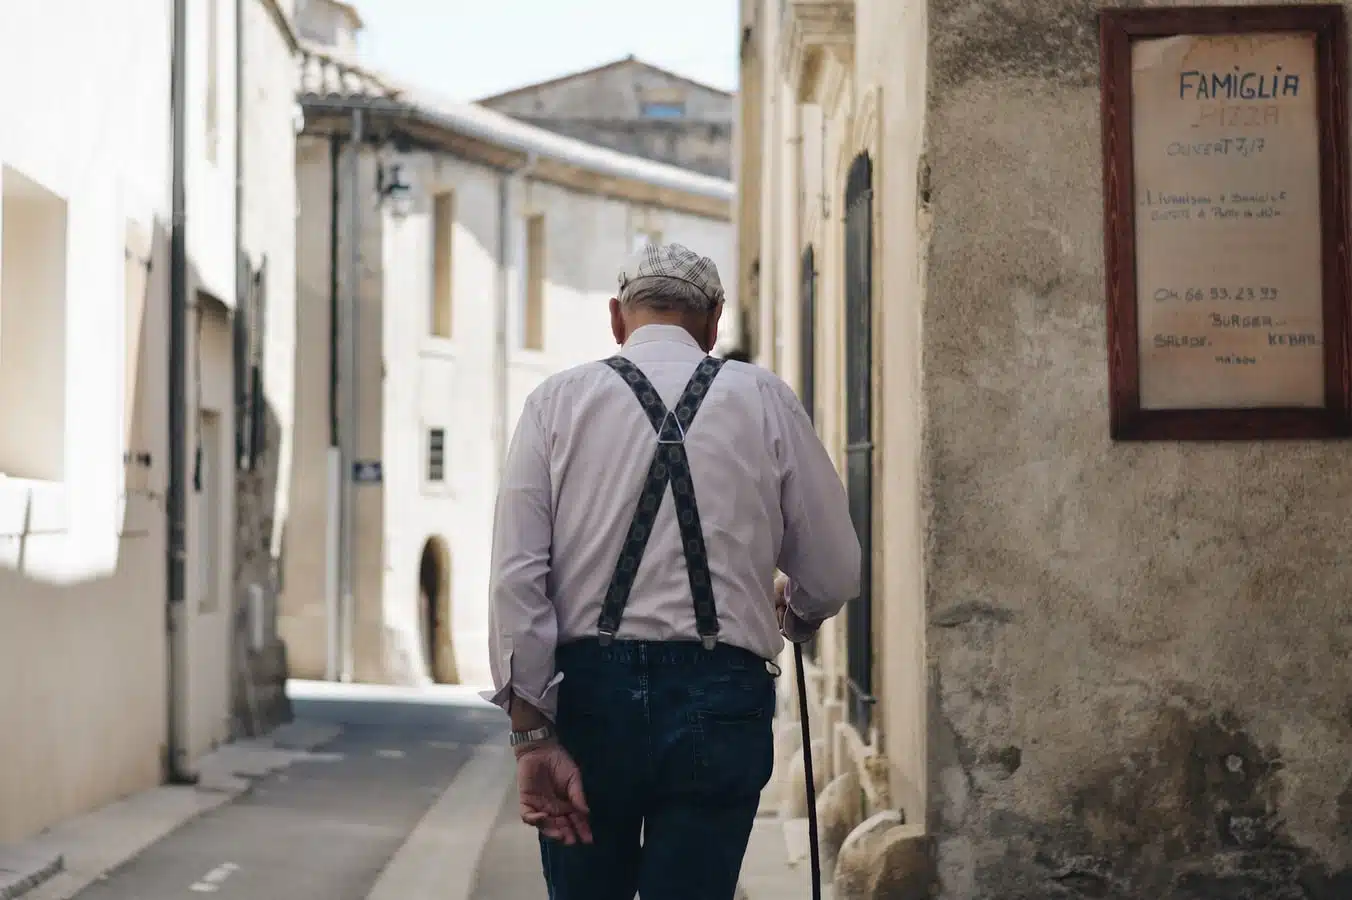 anziano con bastone bretelle scure fotografato di spalle